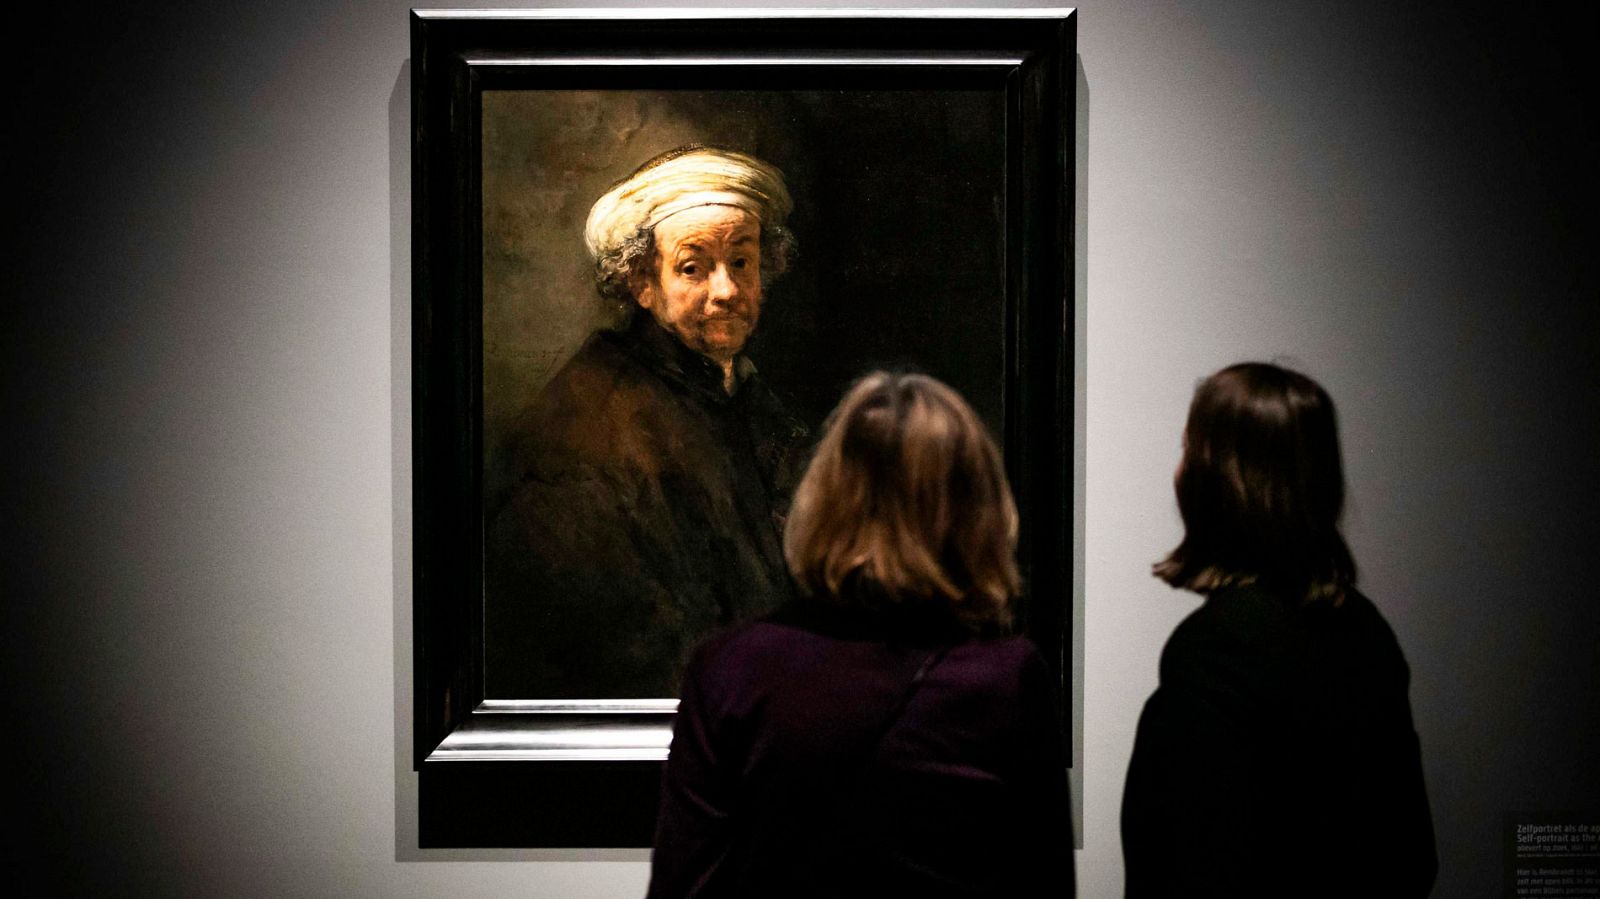 Rembrant: la mayor exposición sobre el pintor abre sus puertas en Ámsterdam - RTVE.es